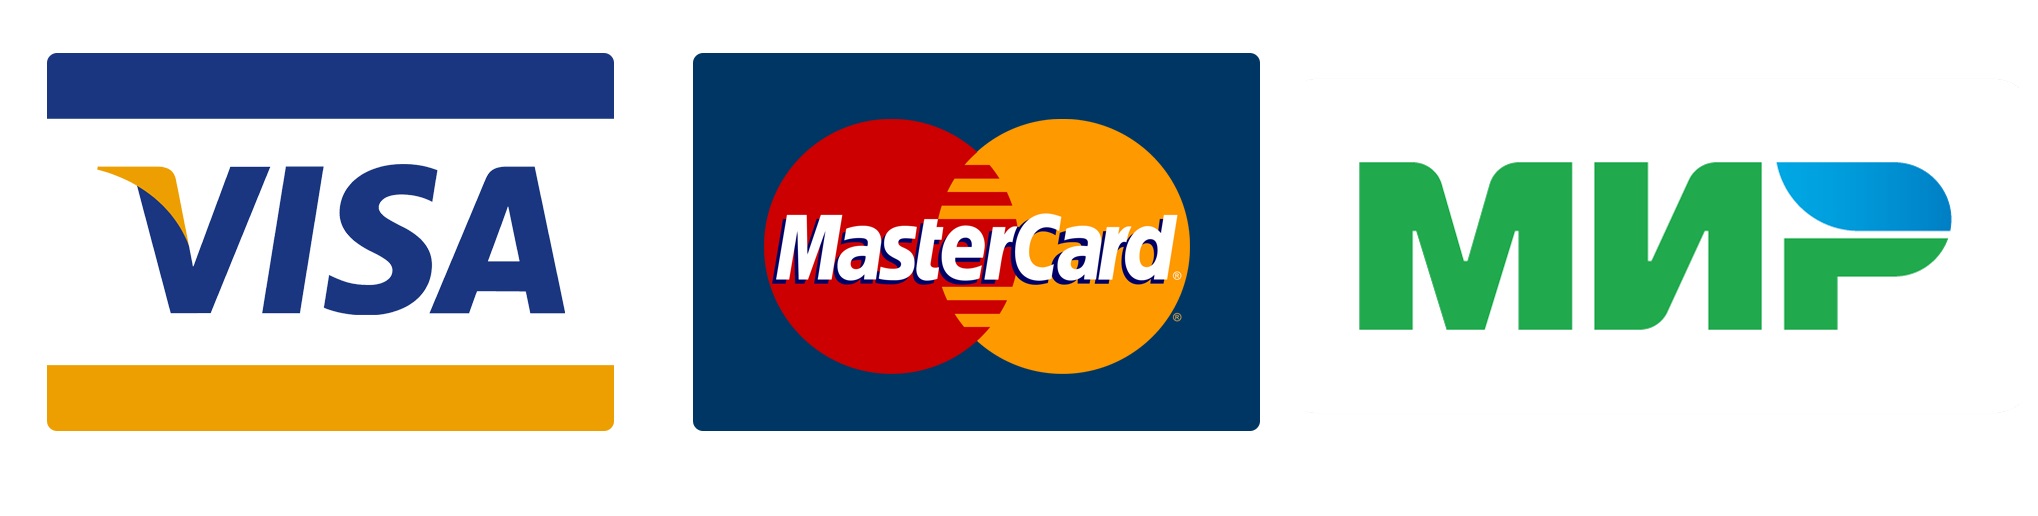 Visa mastercard платежные системы. Логотипы платёжной системы виза мастер карт. Эмблемы банковских карт. Виза мастер карт мир. Значки visa MASTERCARD мир.